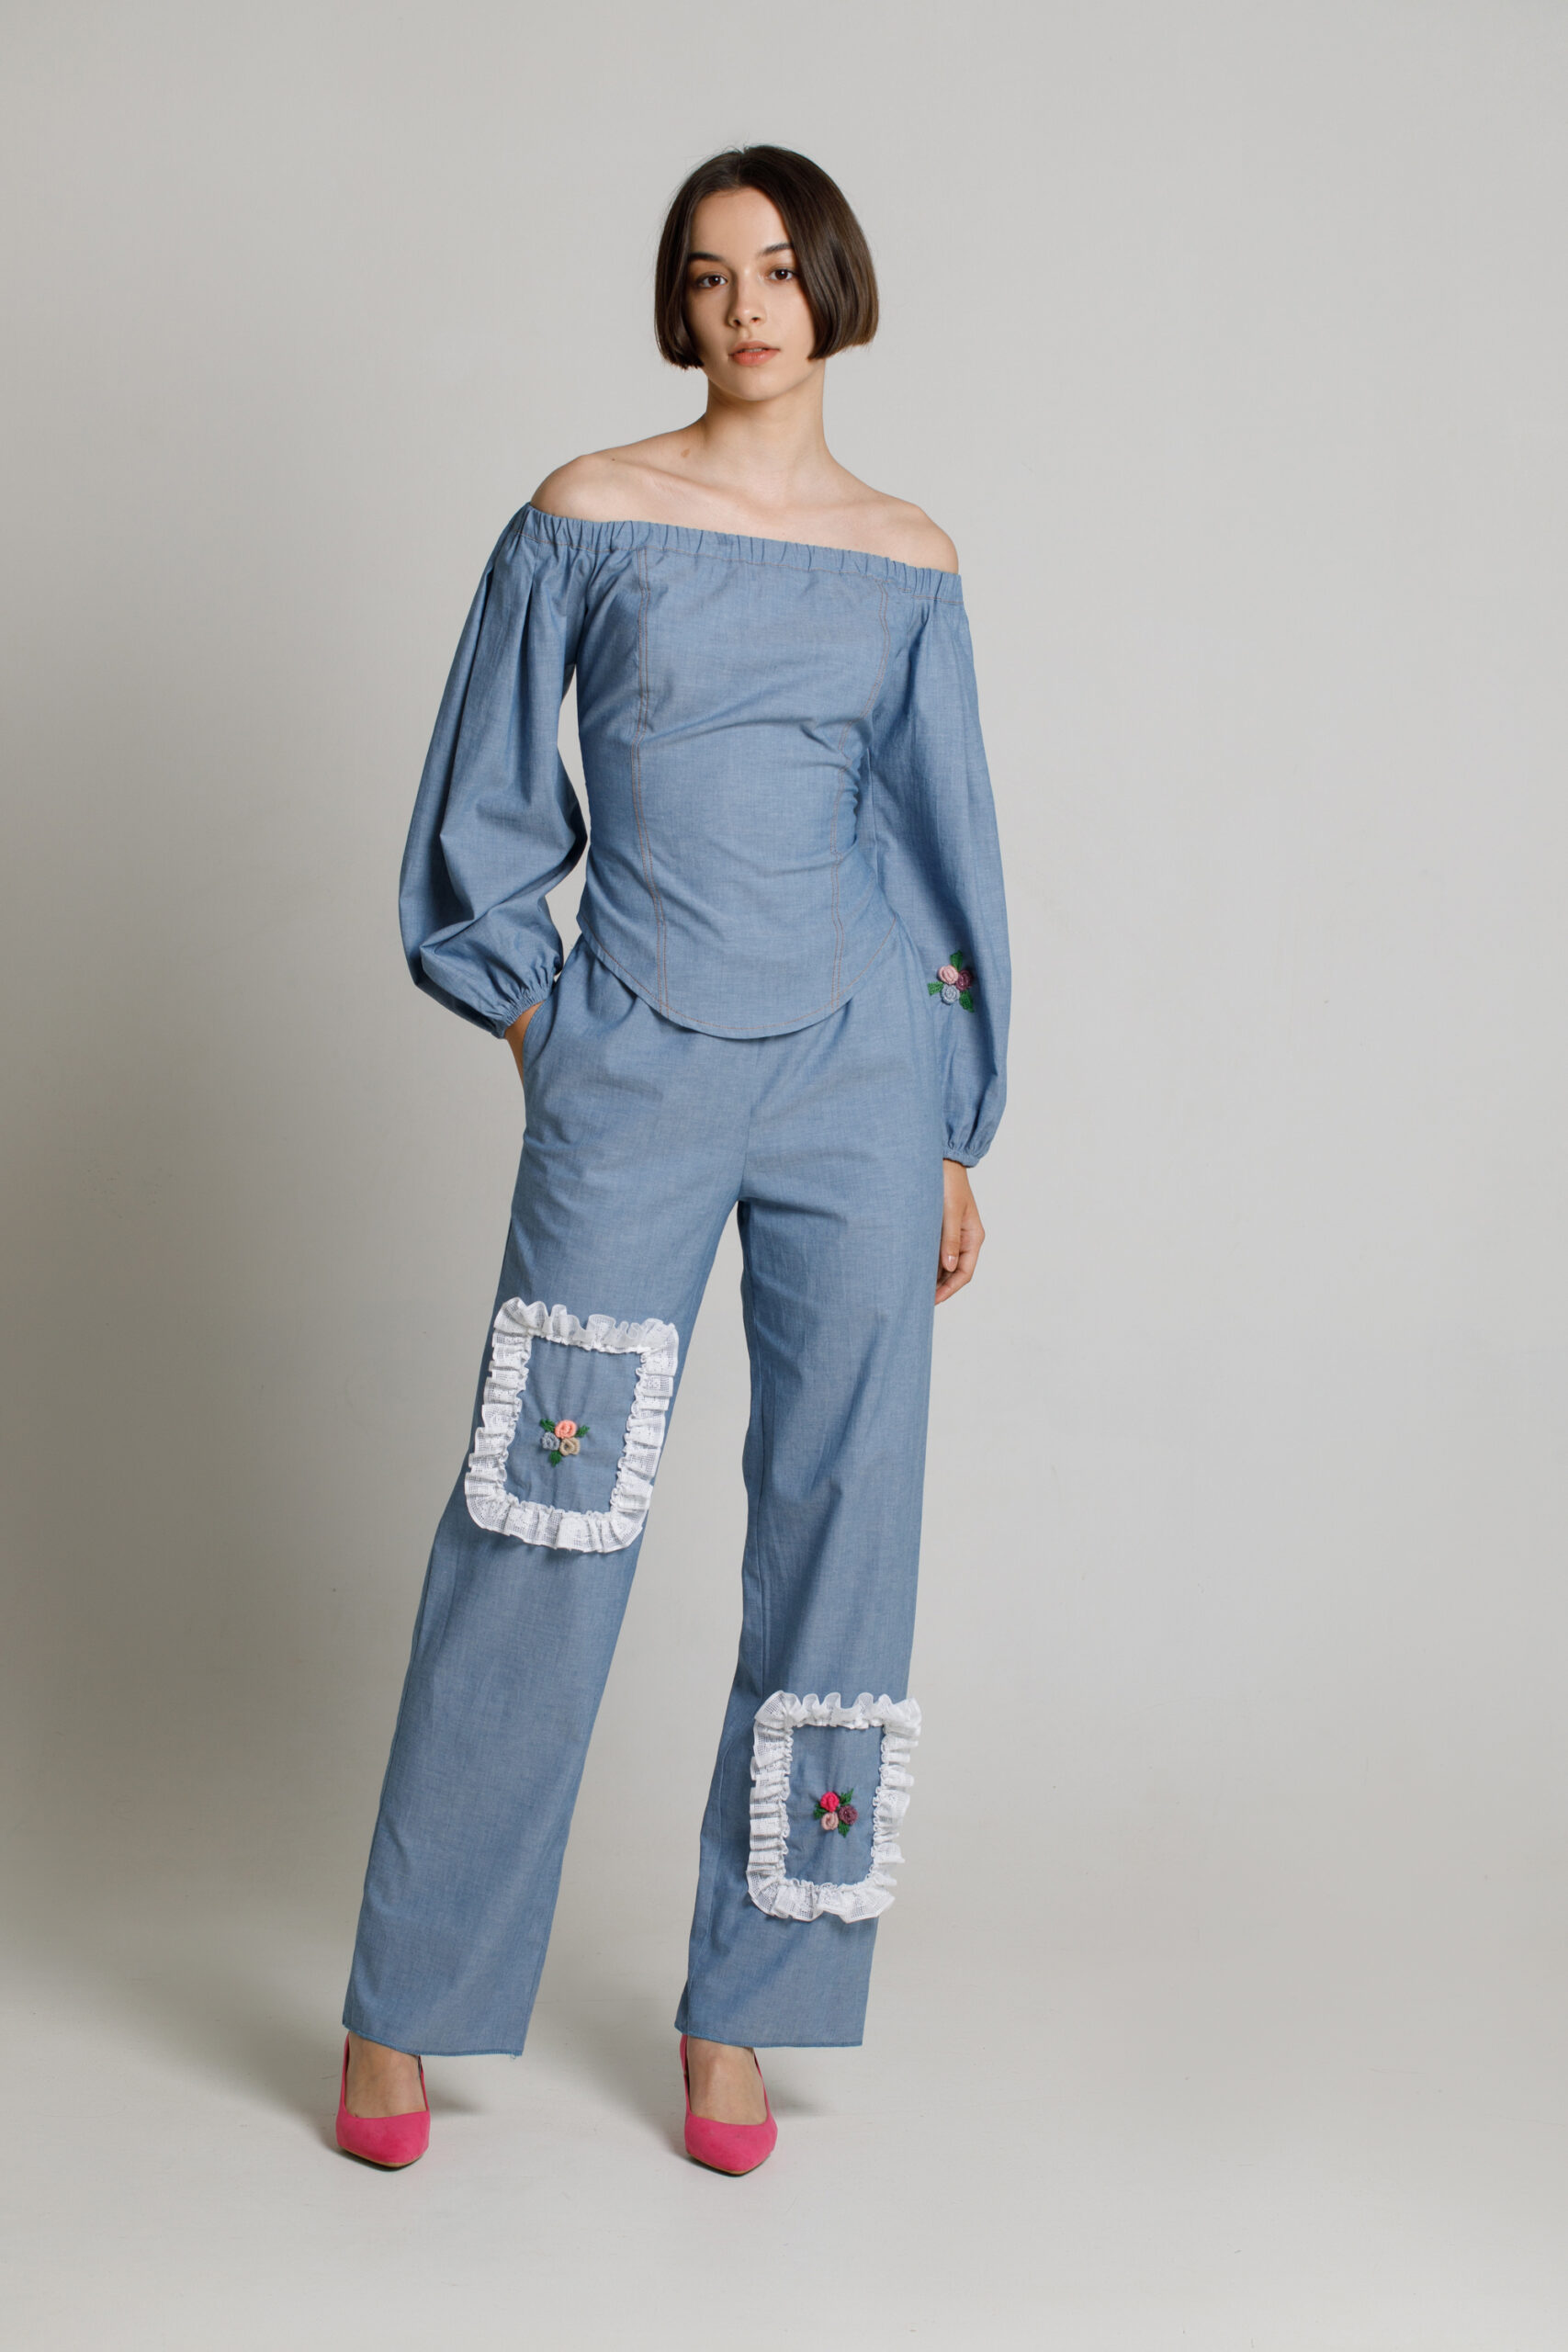 Bluza CIELO tip corset eleganta din blug albastru. Materiale naturale, design unicat, cu broderie si aplicatii handmade